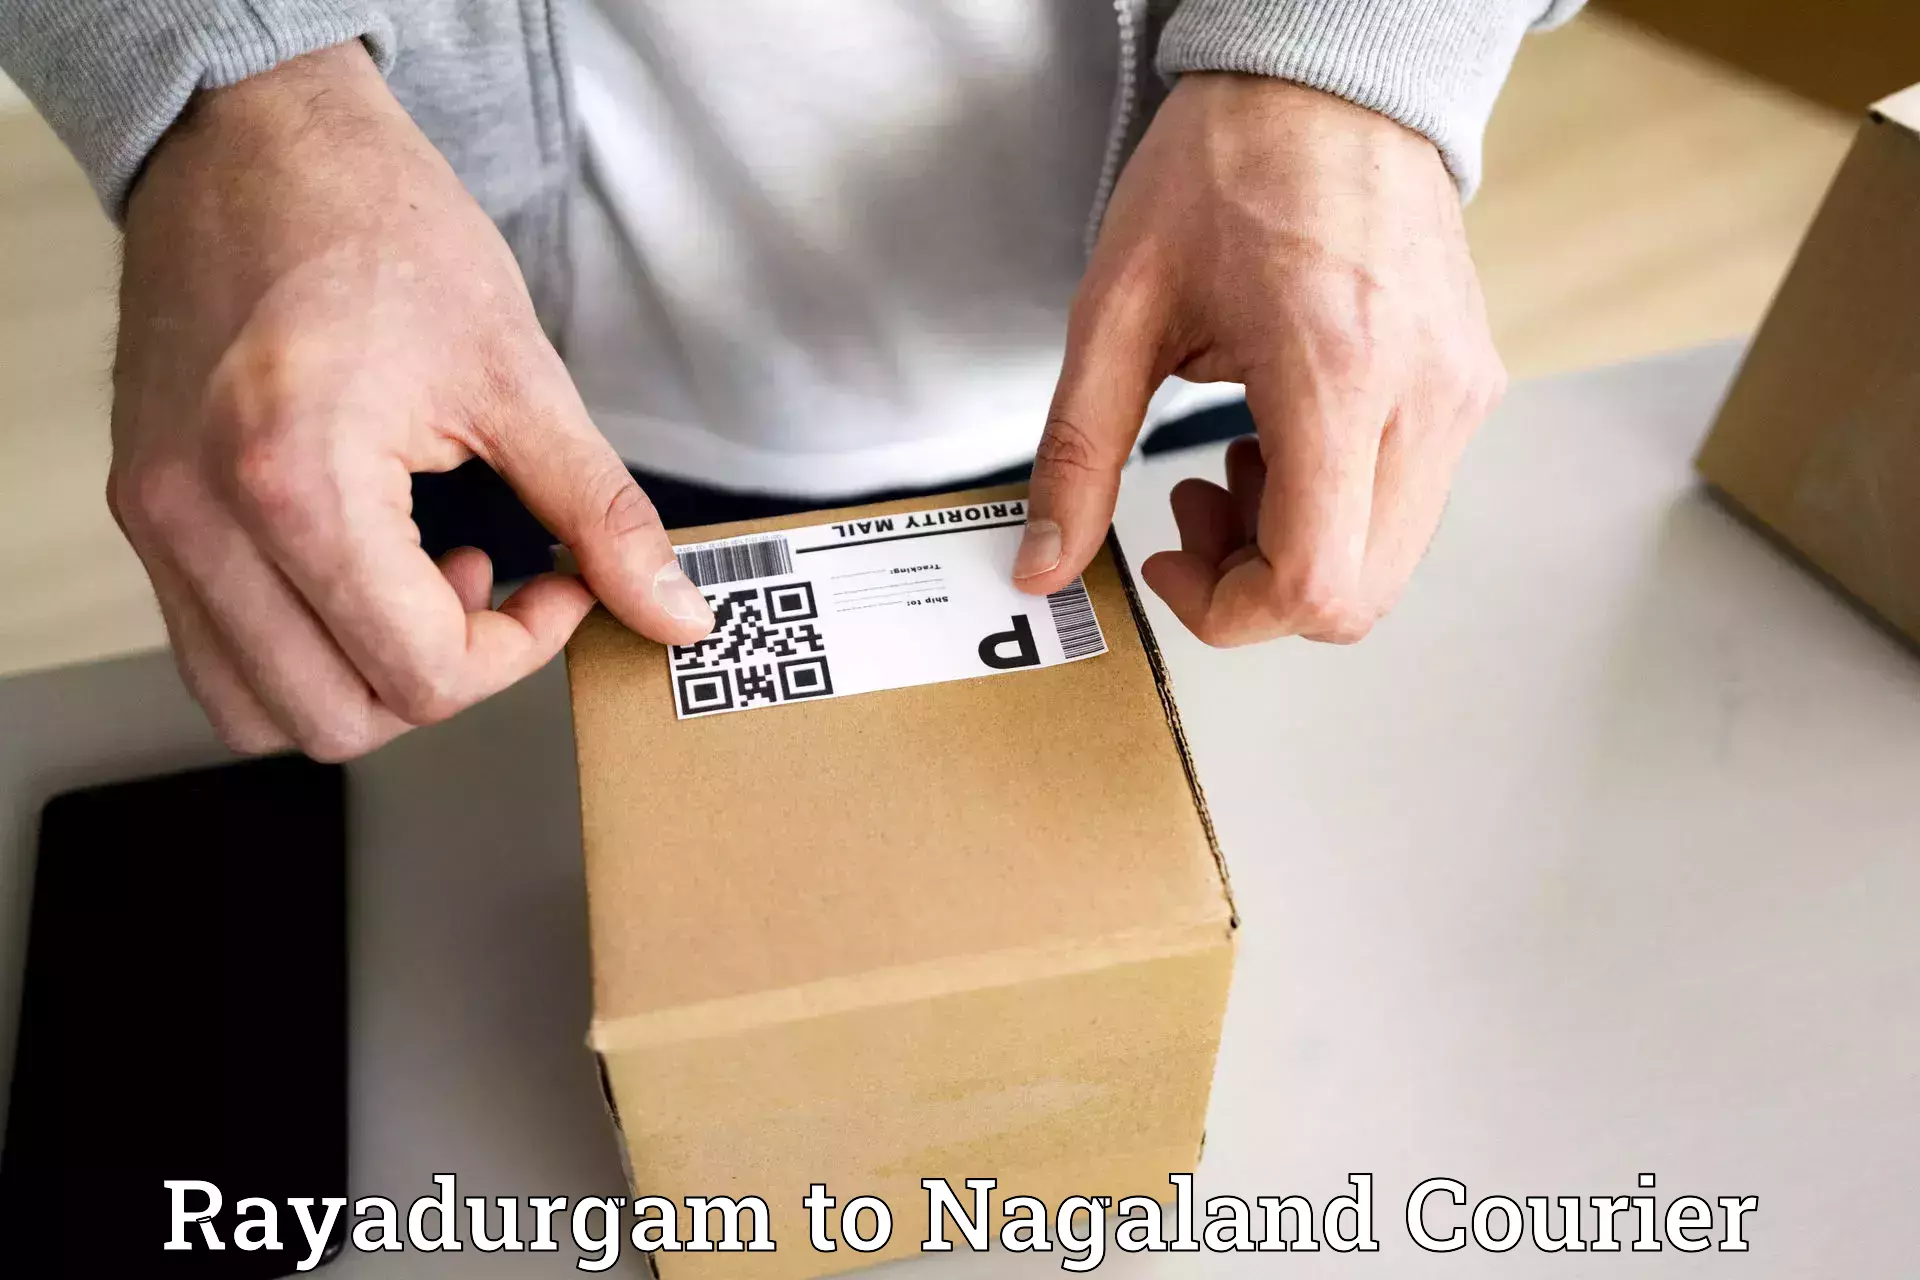 Comprehensive shipping network Rayadurgam to Nagaland